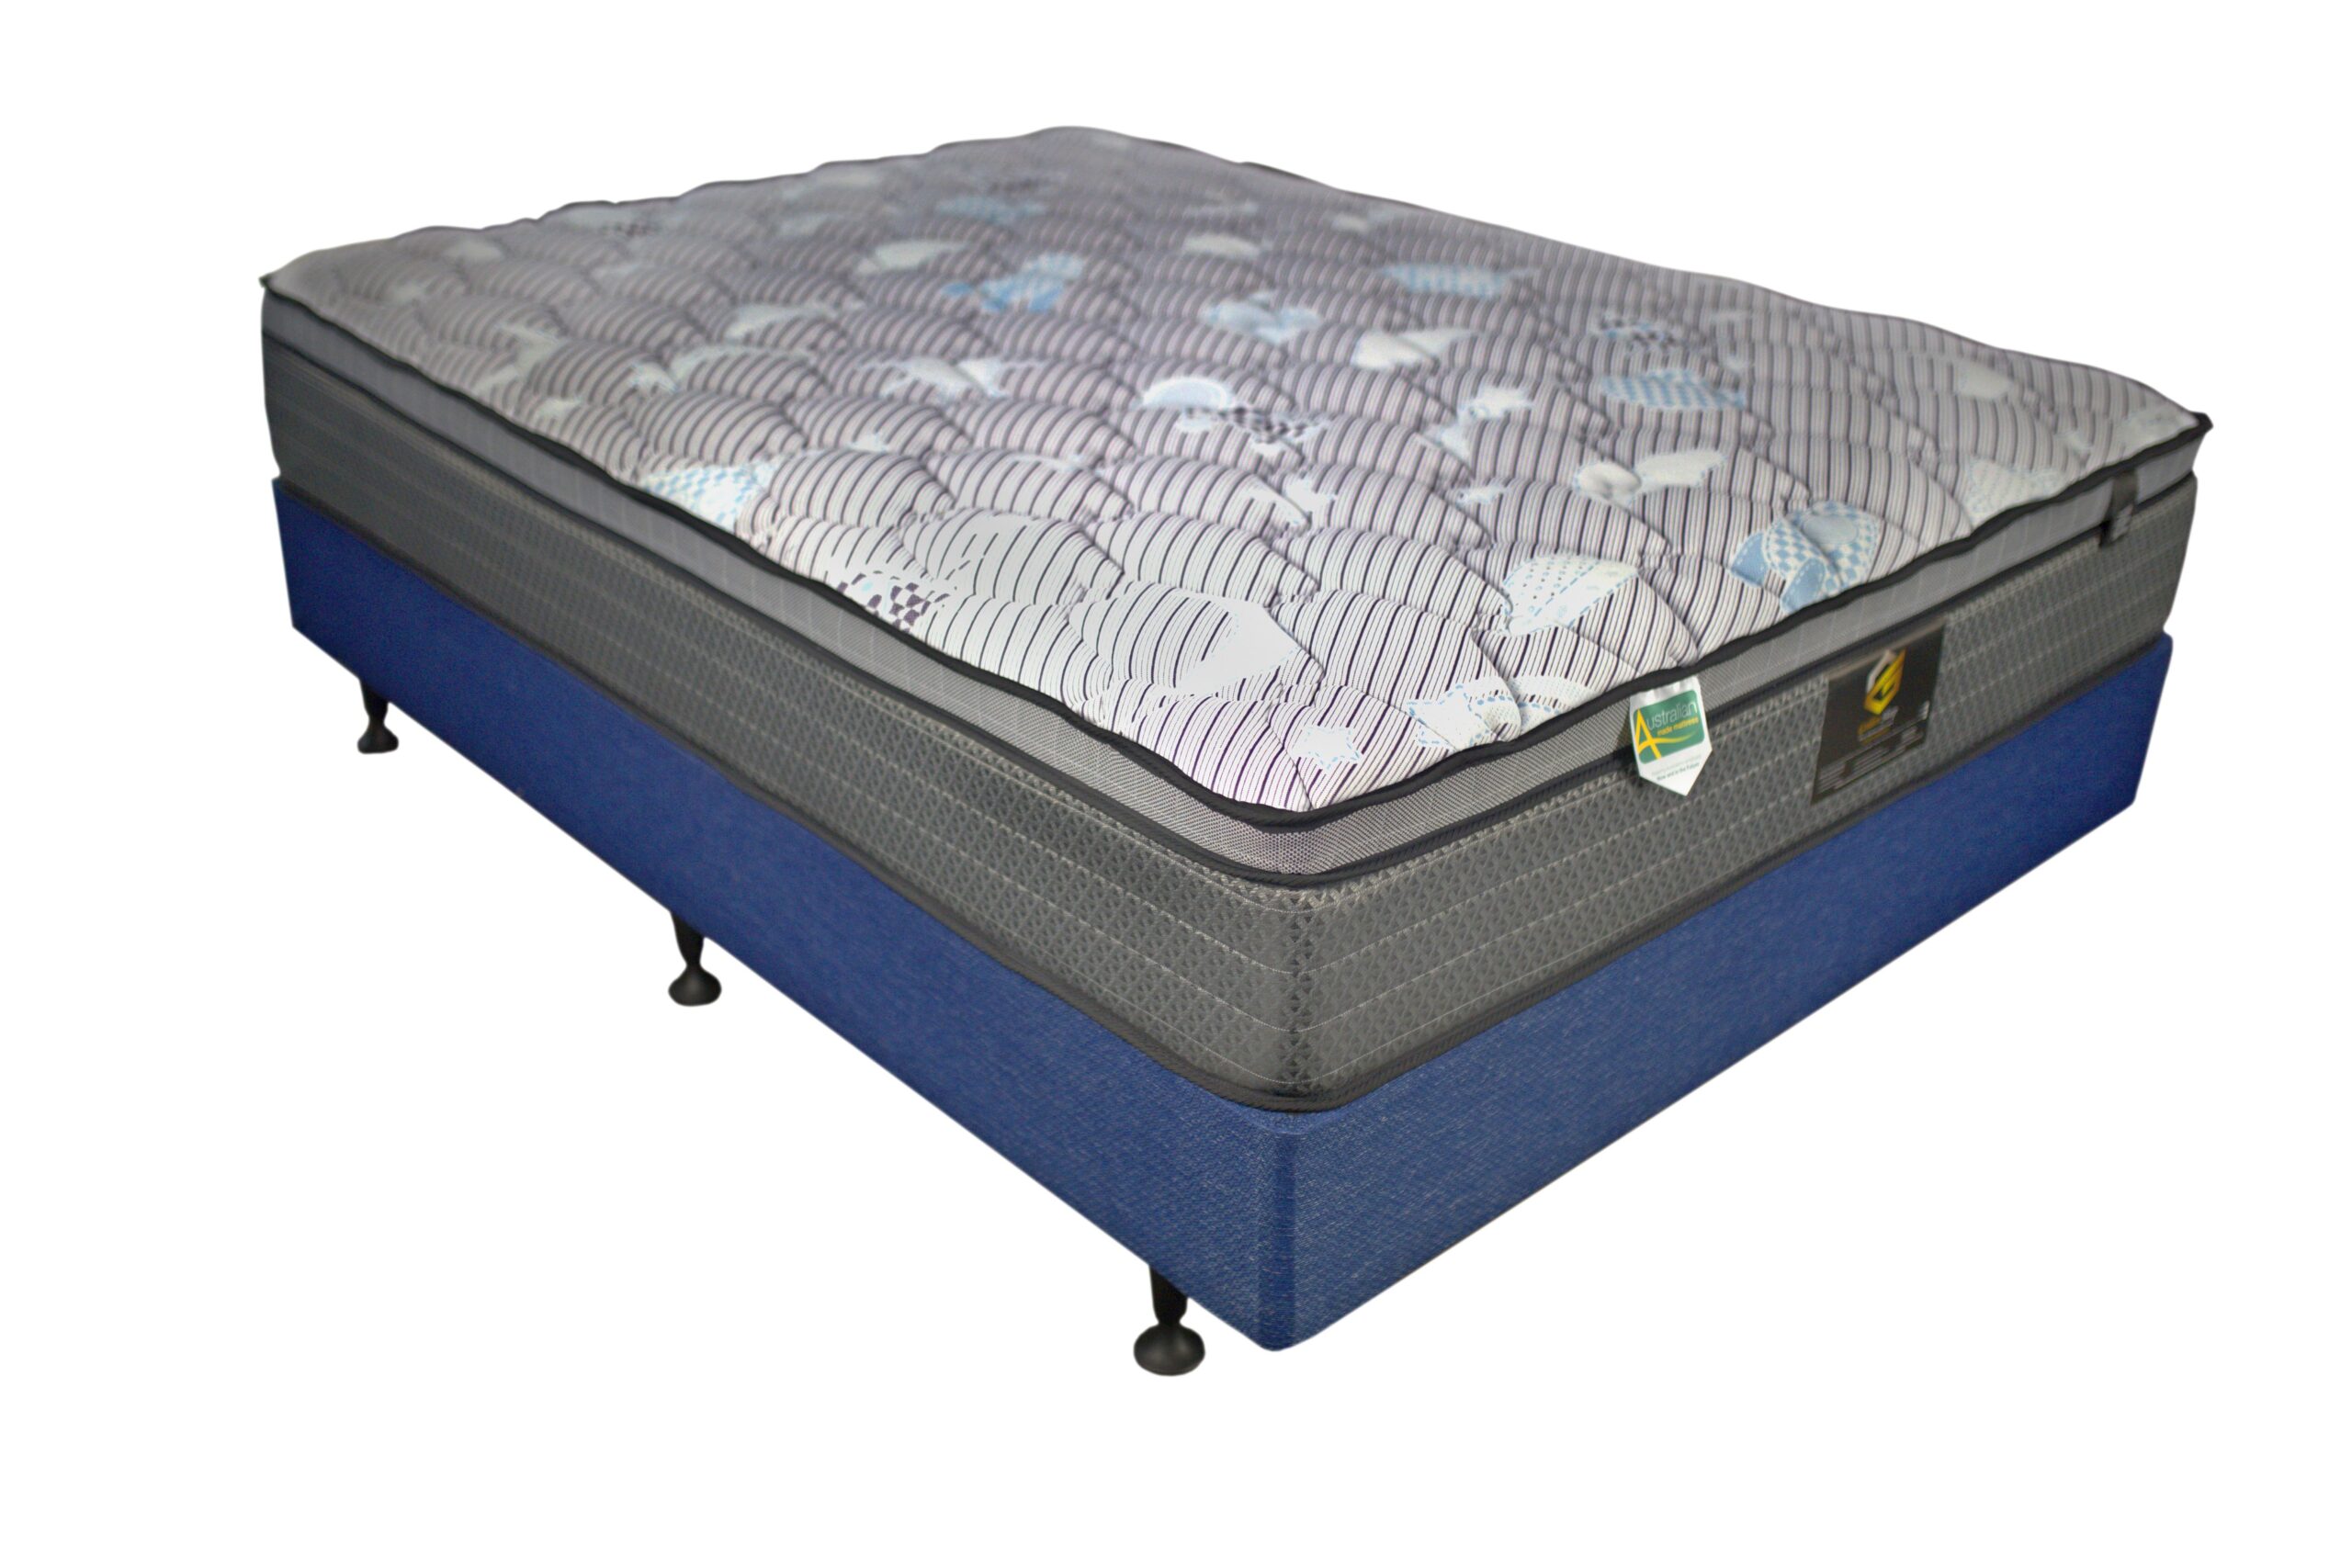 st chapelle luxury firm pillow-top mattress reviews